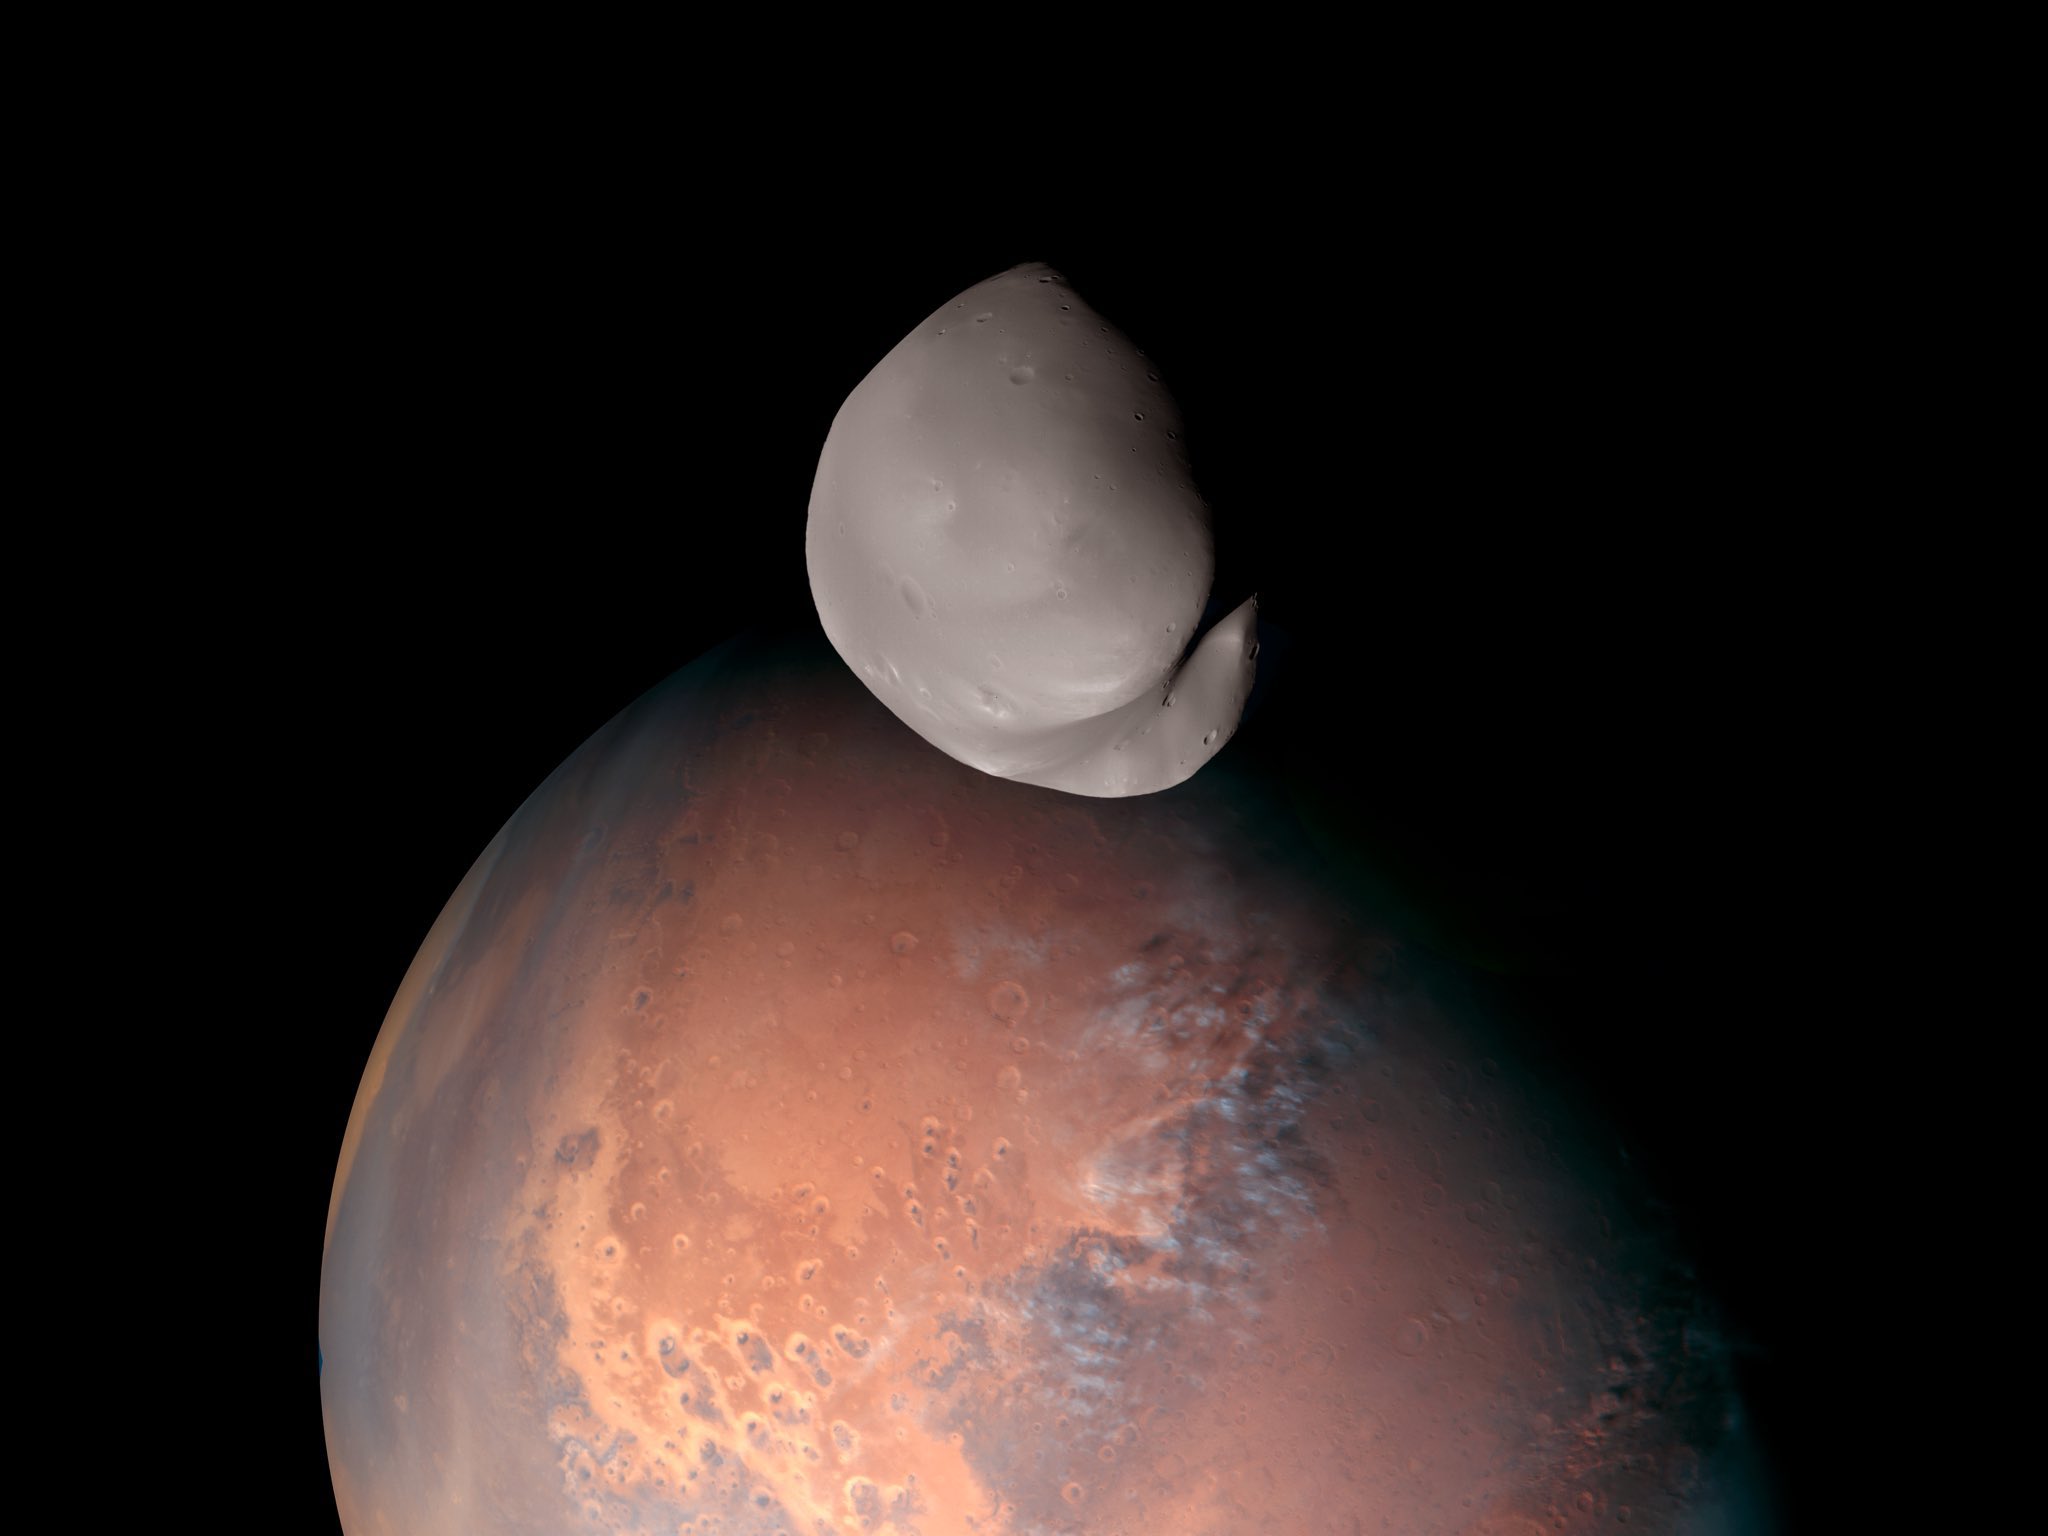 ΗΑΕ: Εντυπωσιακές εικόνες του Δείμου, του μικρότερου δορυφόρου του Άρη, έστειλε στη Γη το διαστημικό σκάφος Hope